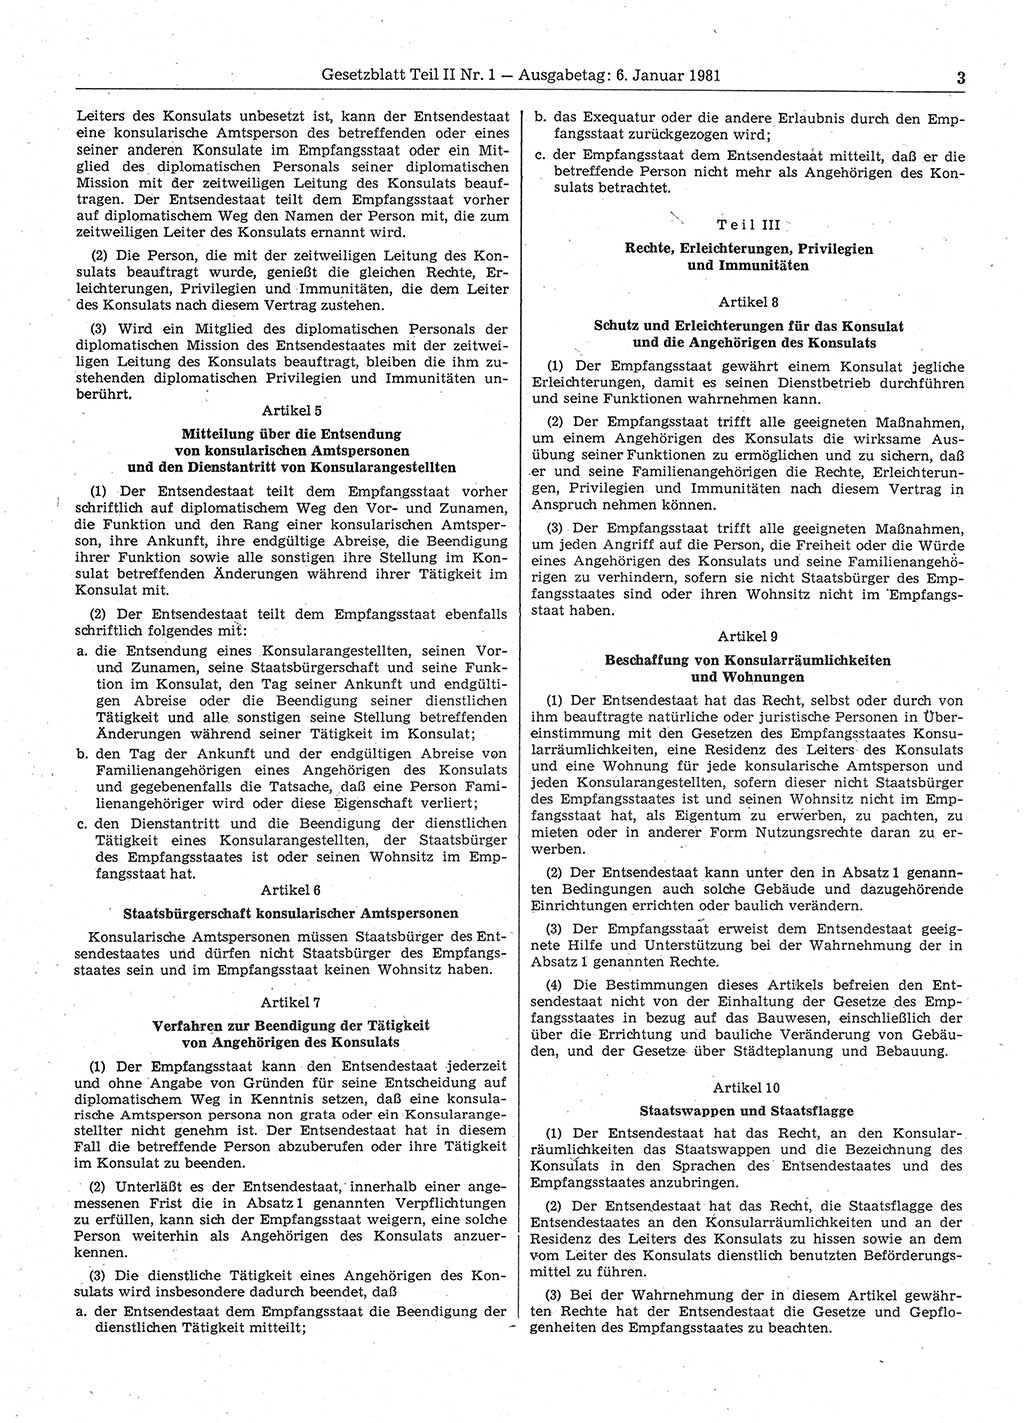 Gesetzblatt (GBl.) der Deutschen Demokratischen Republik (DDR) Teil ⅠⅠ 1981, Seite 3 (GBl. DDR ⅠⅠ 1981, S. 3)